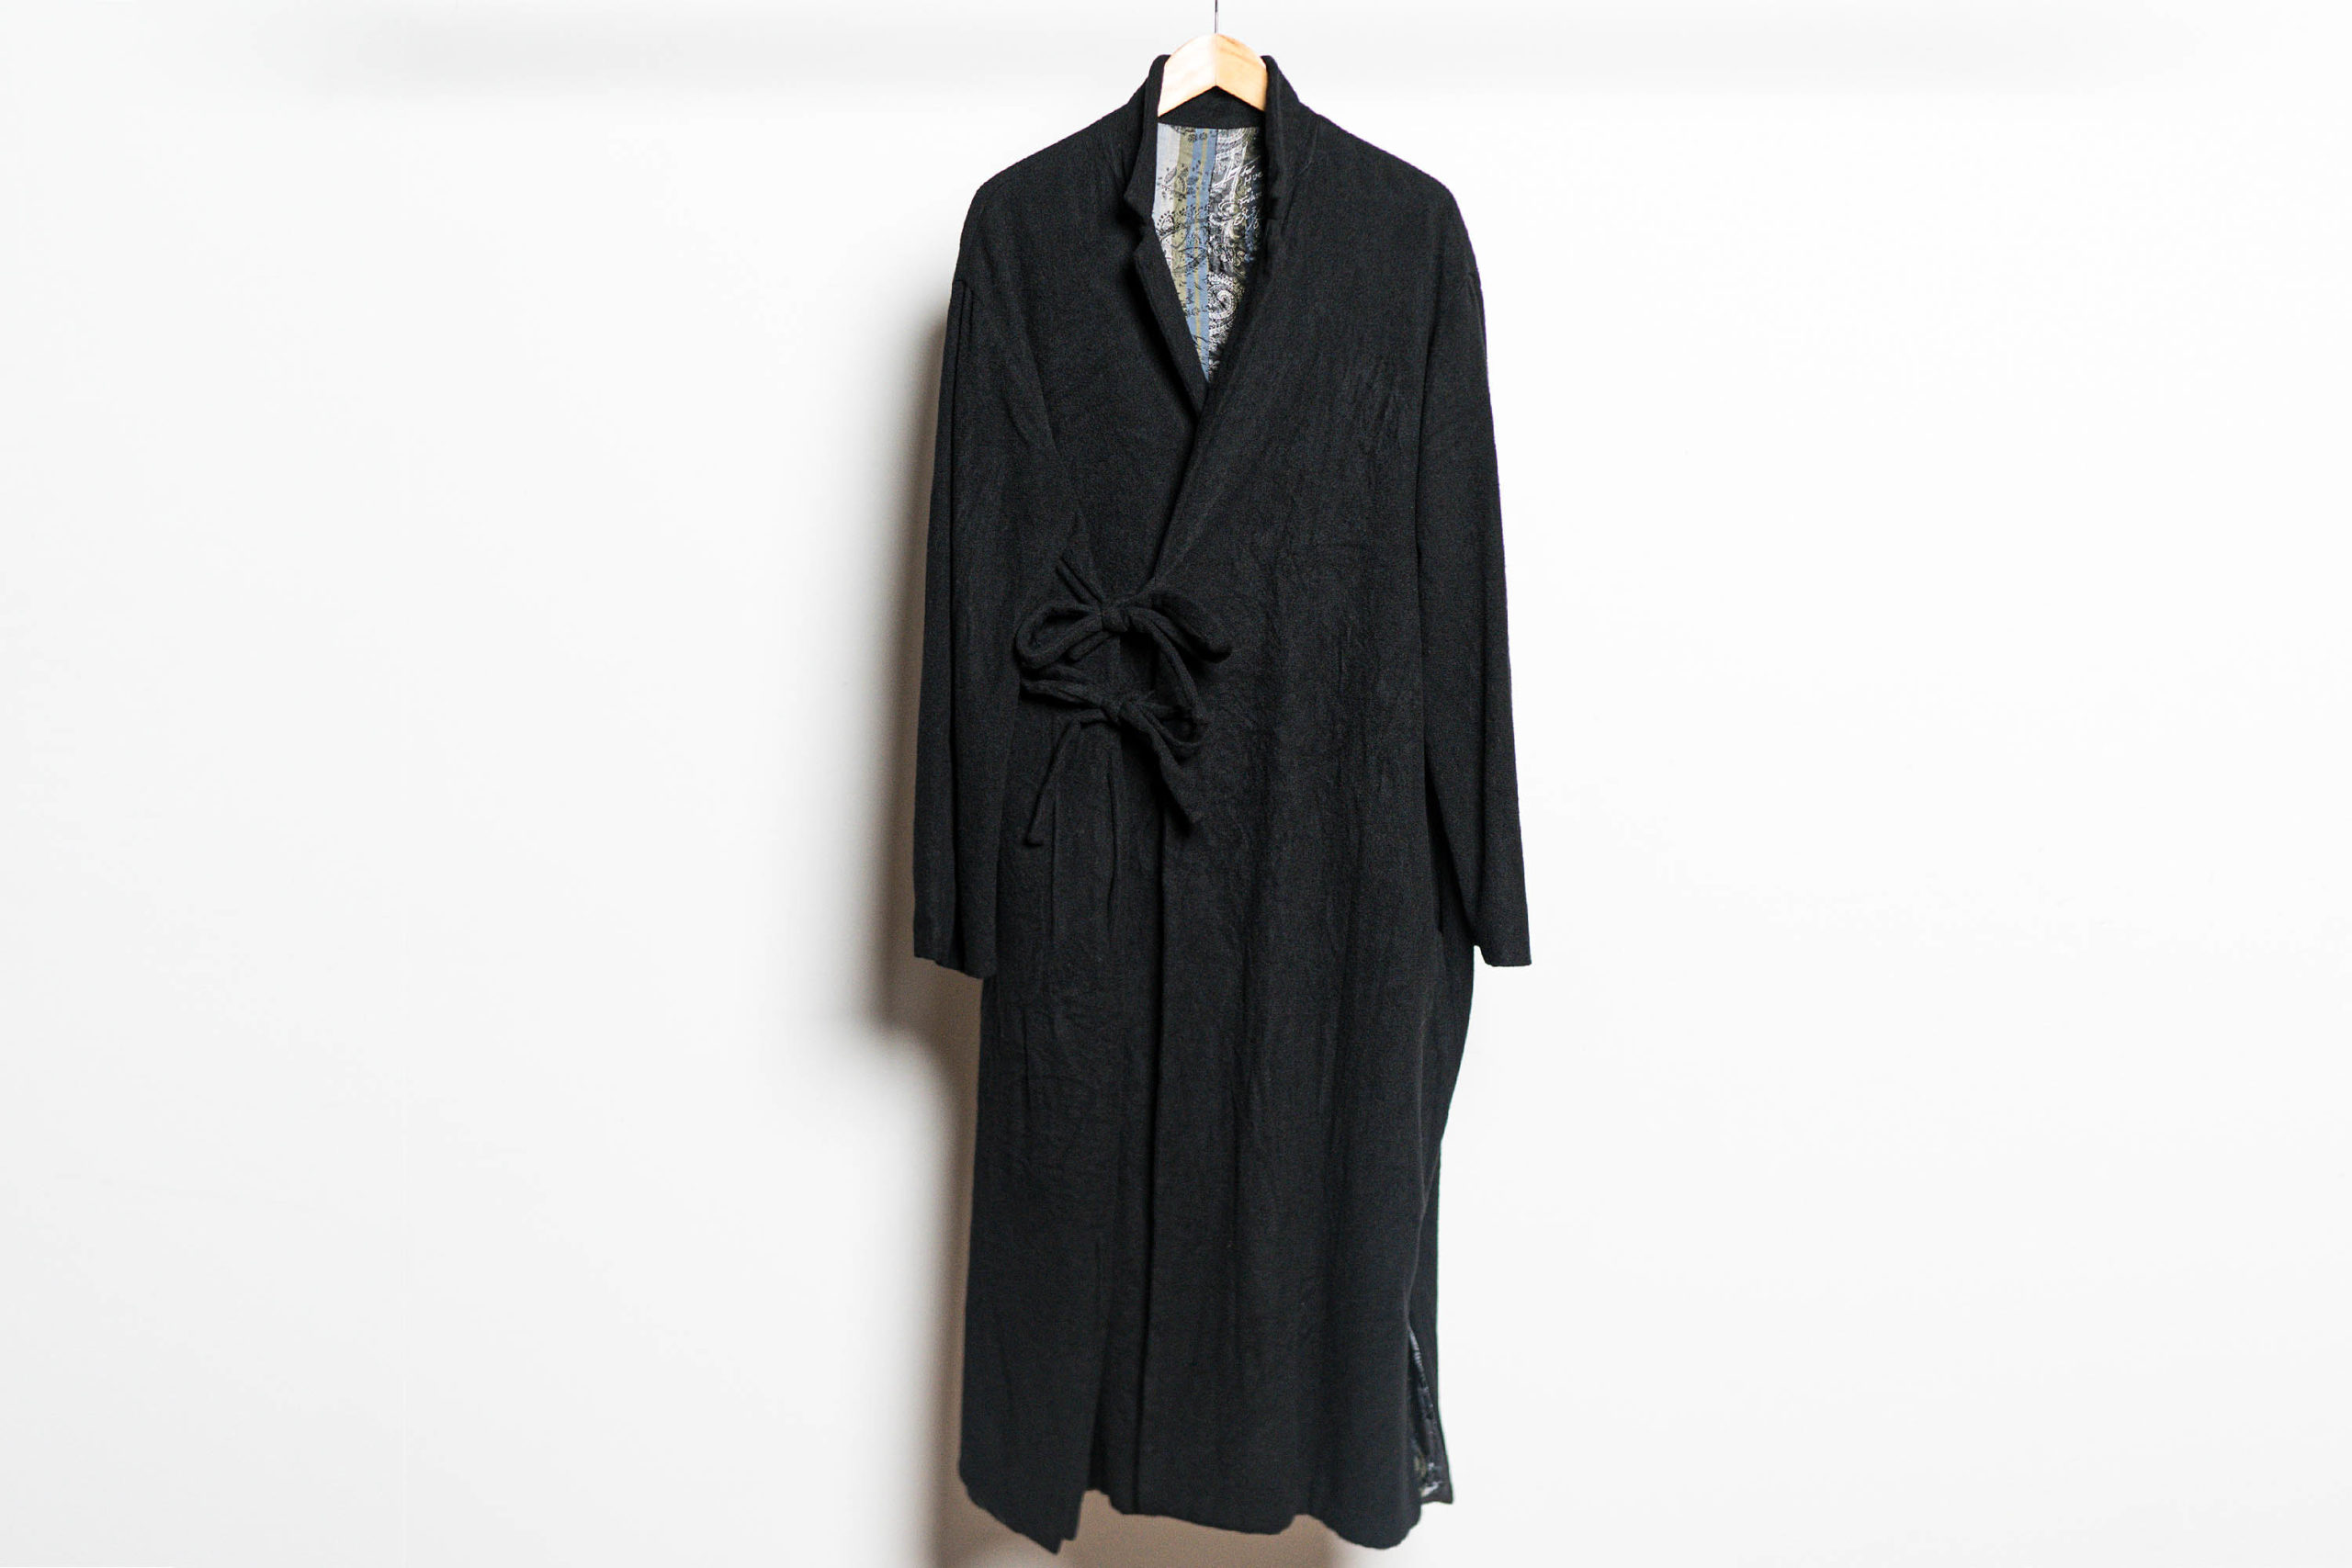 SUSUGEOFFREY B. SMALL／special kimono coat